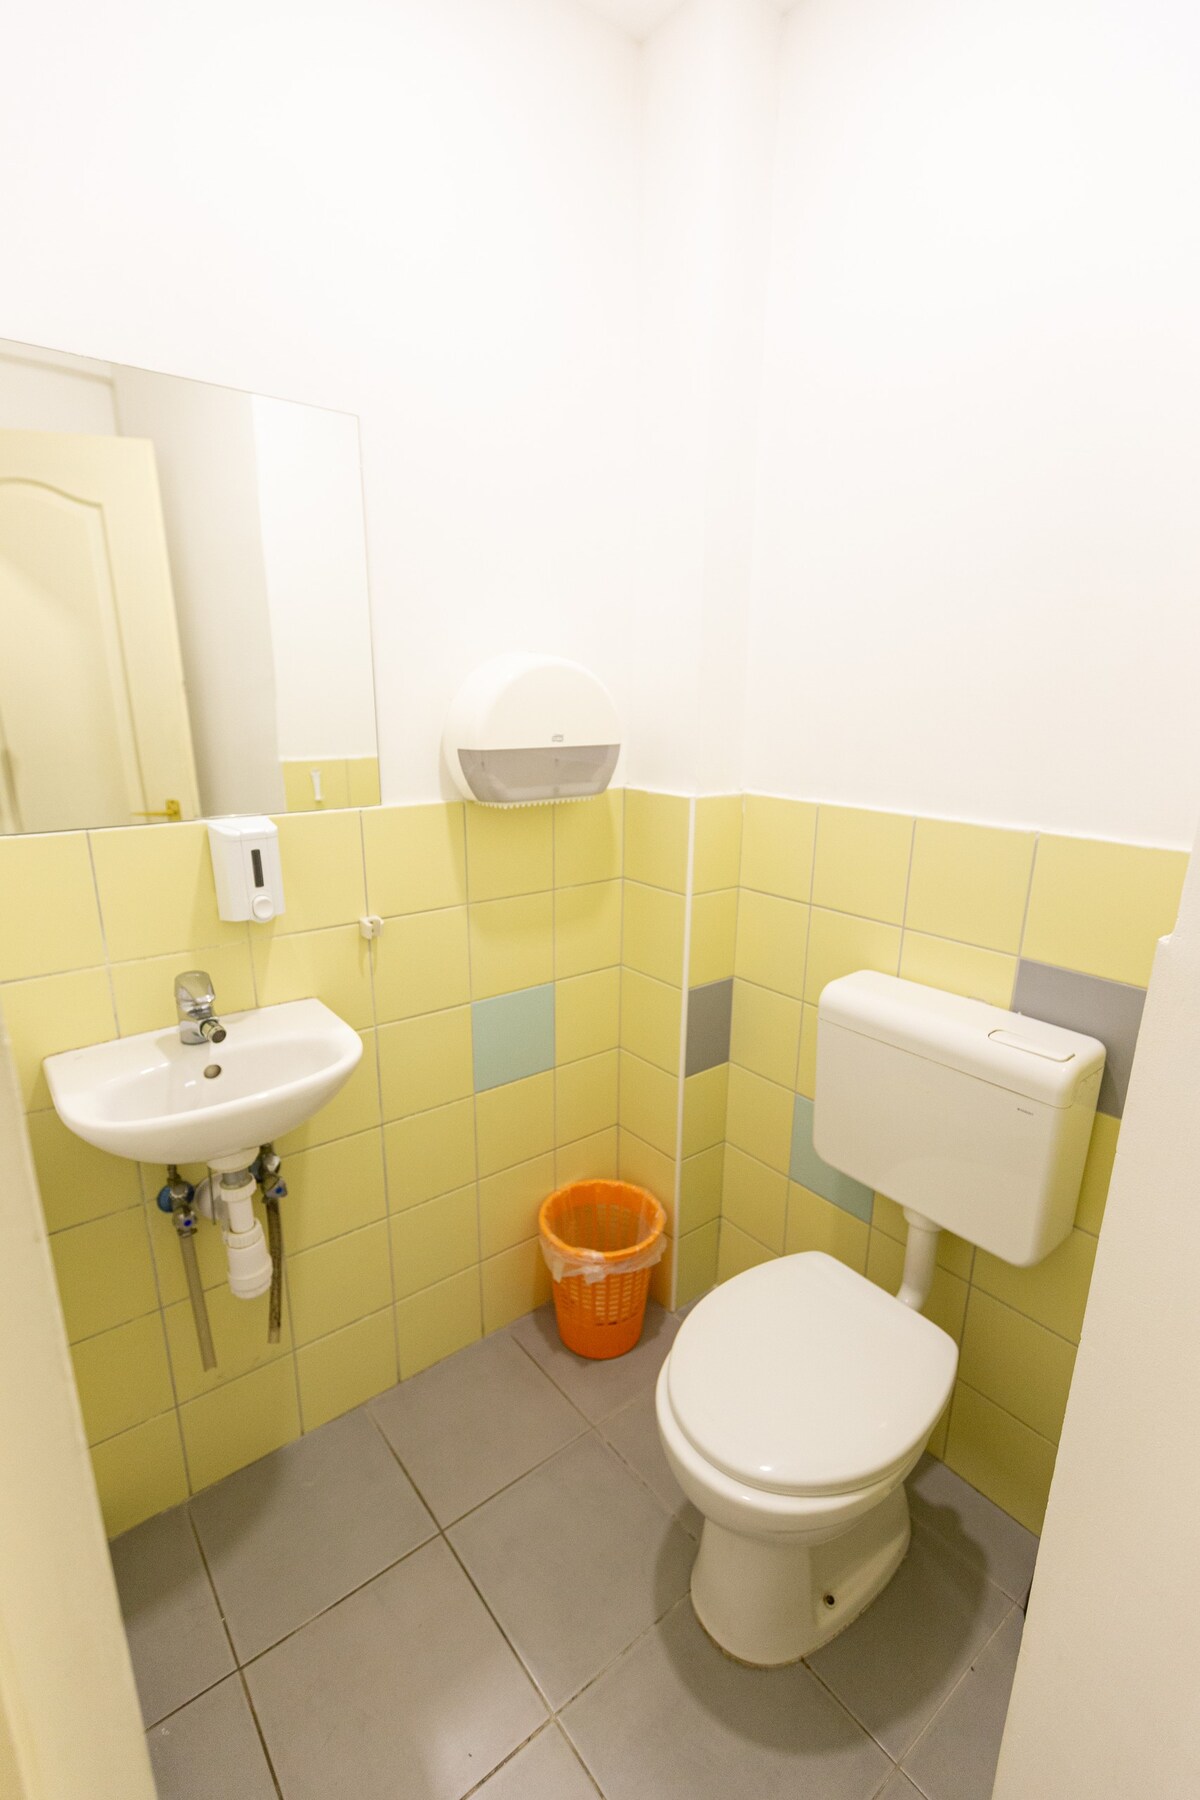 布达佩斯宽敞的共享厕所房间